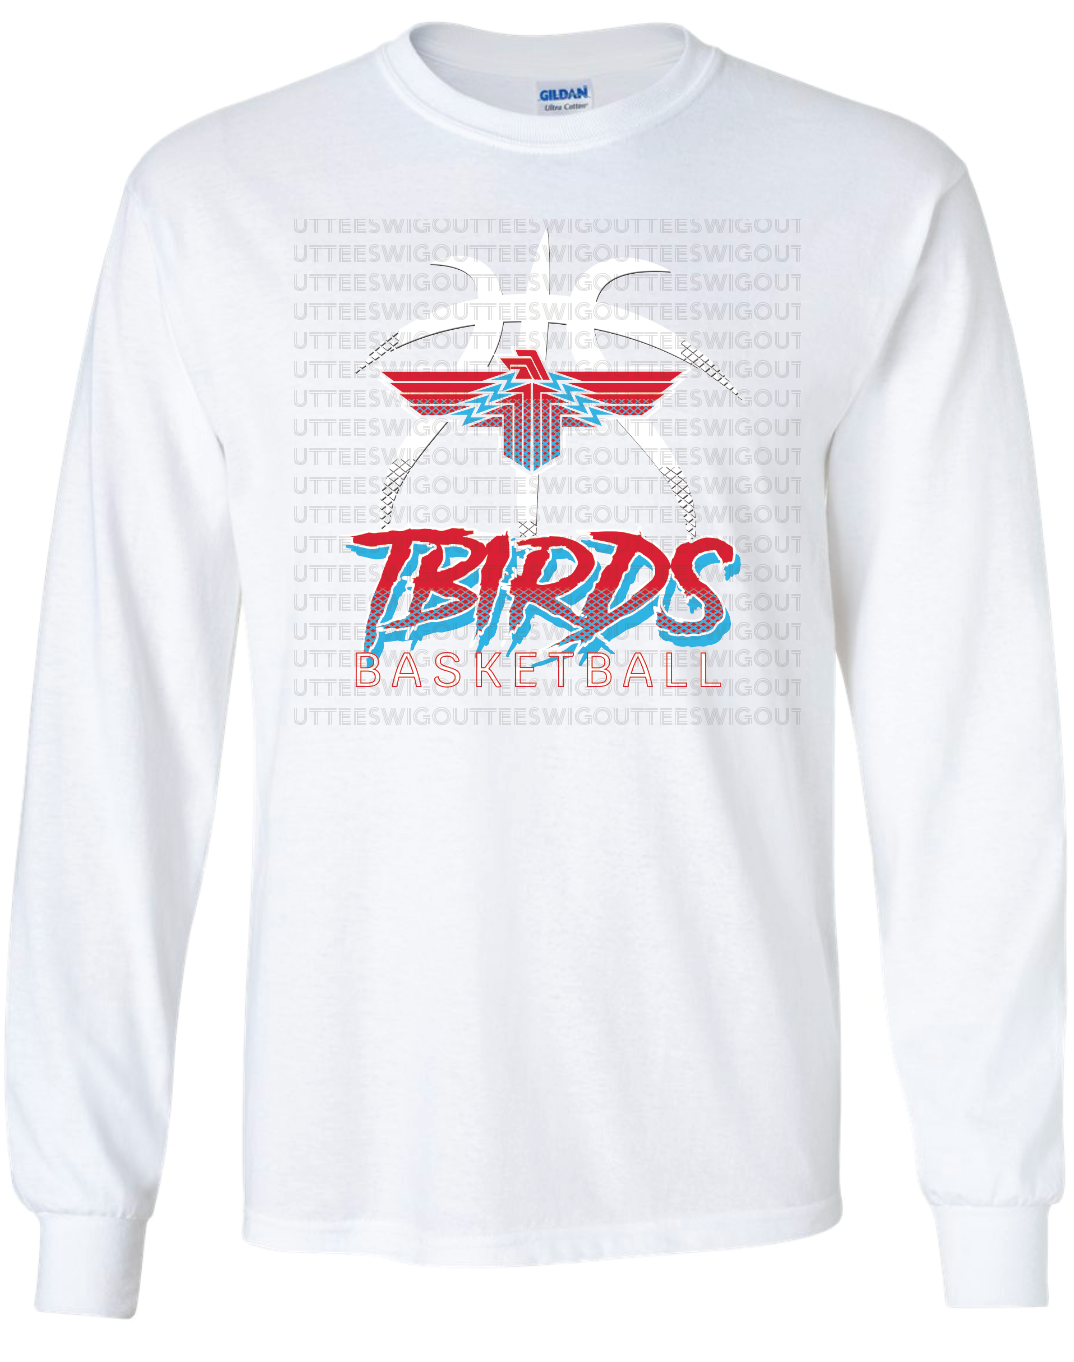 Tbirds Basketball Gildan Ultra Cotton Long Sleeve T-Shirt